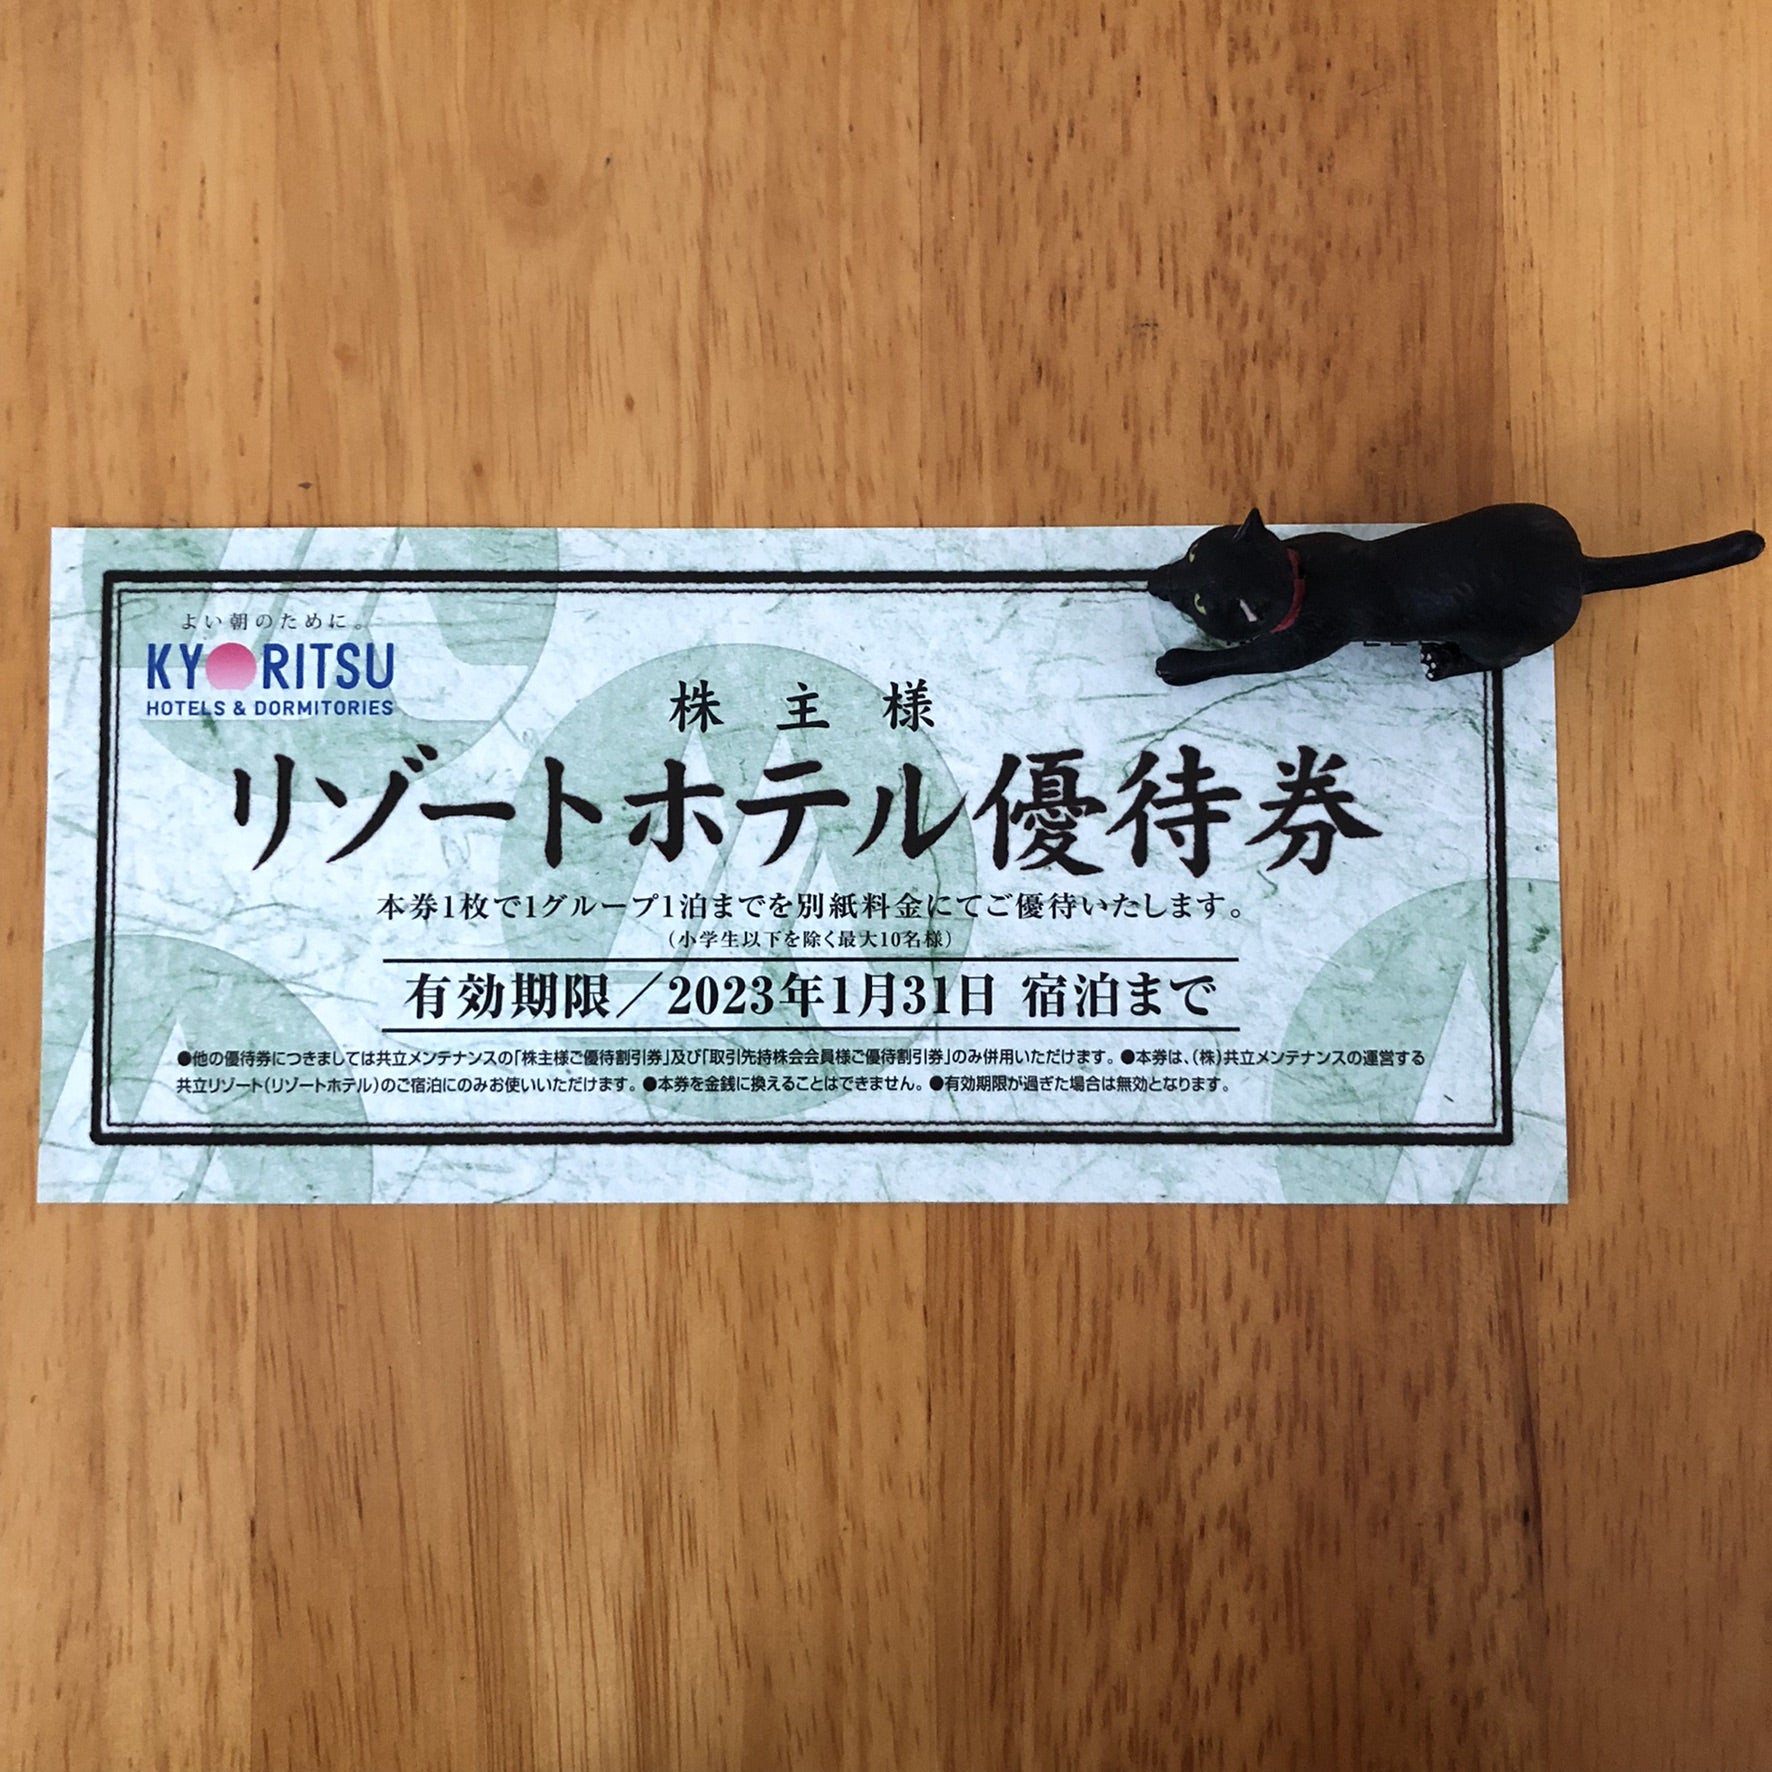 9616共立メンテナンスの株主優待券を使って箱根旅行に行ってきた